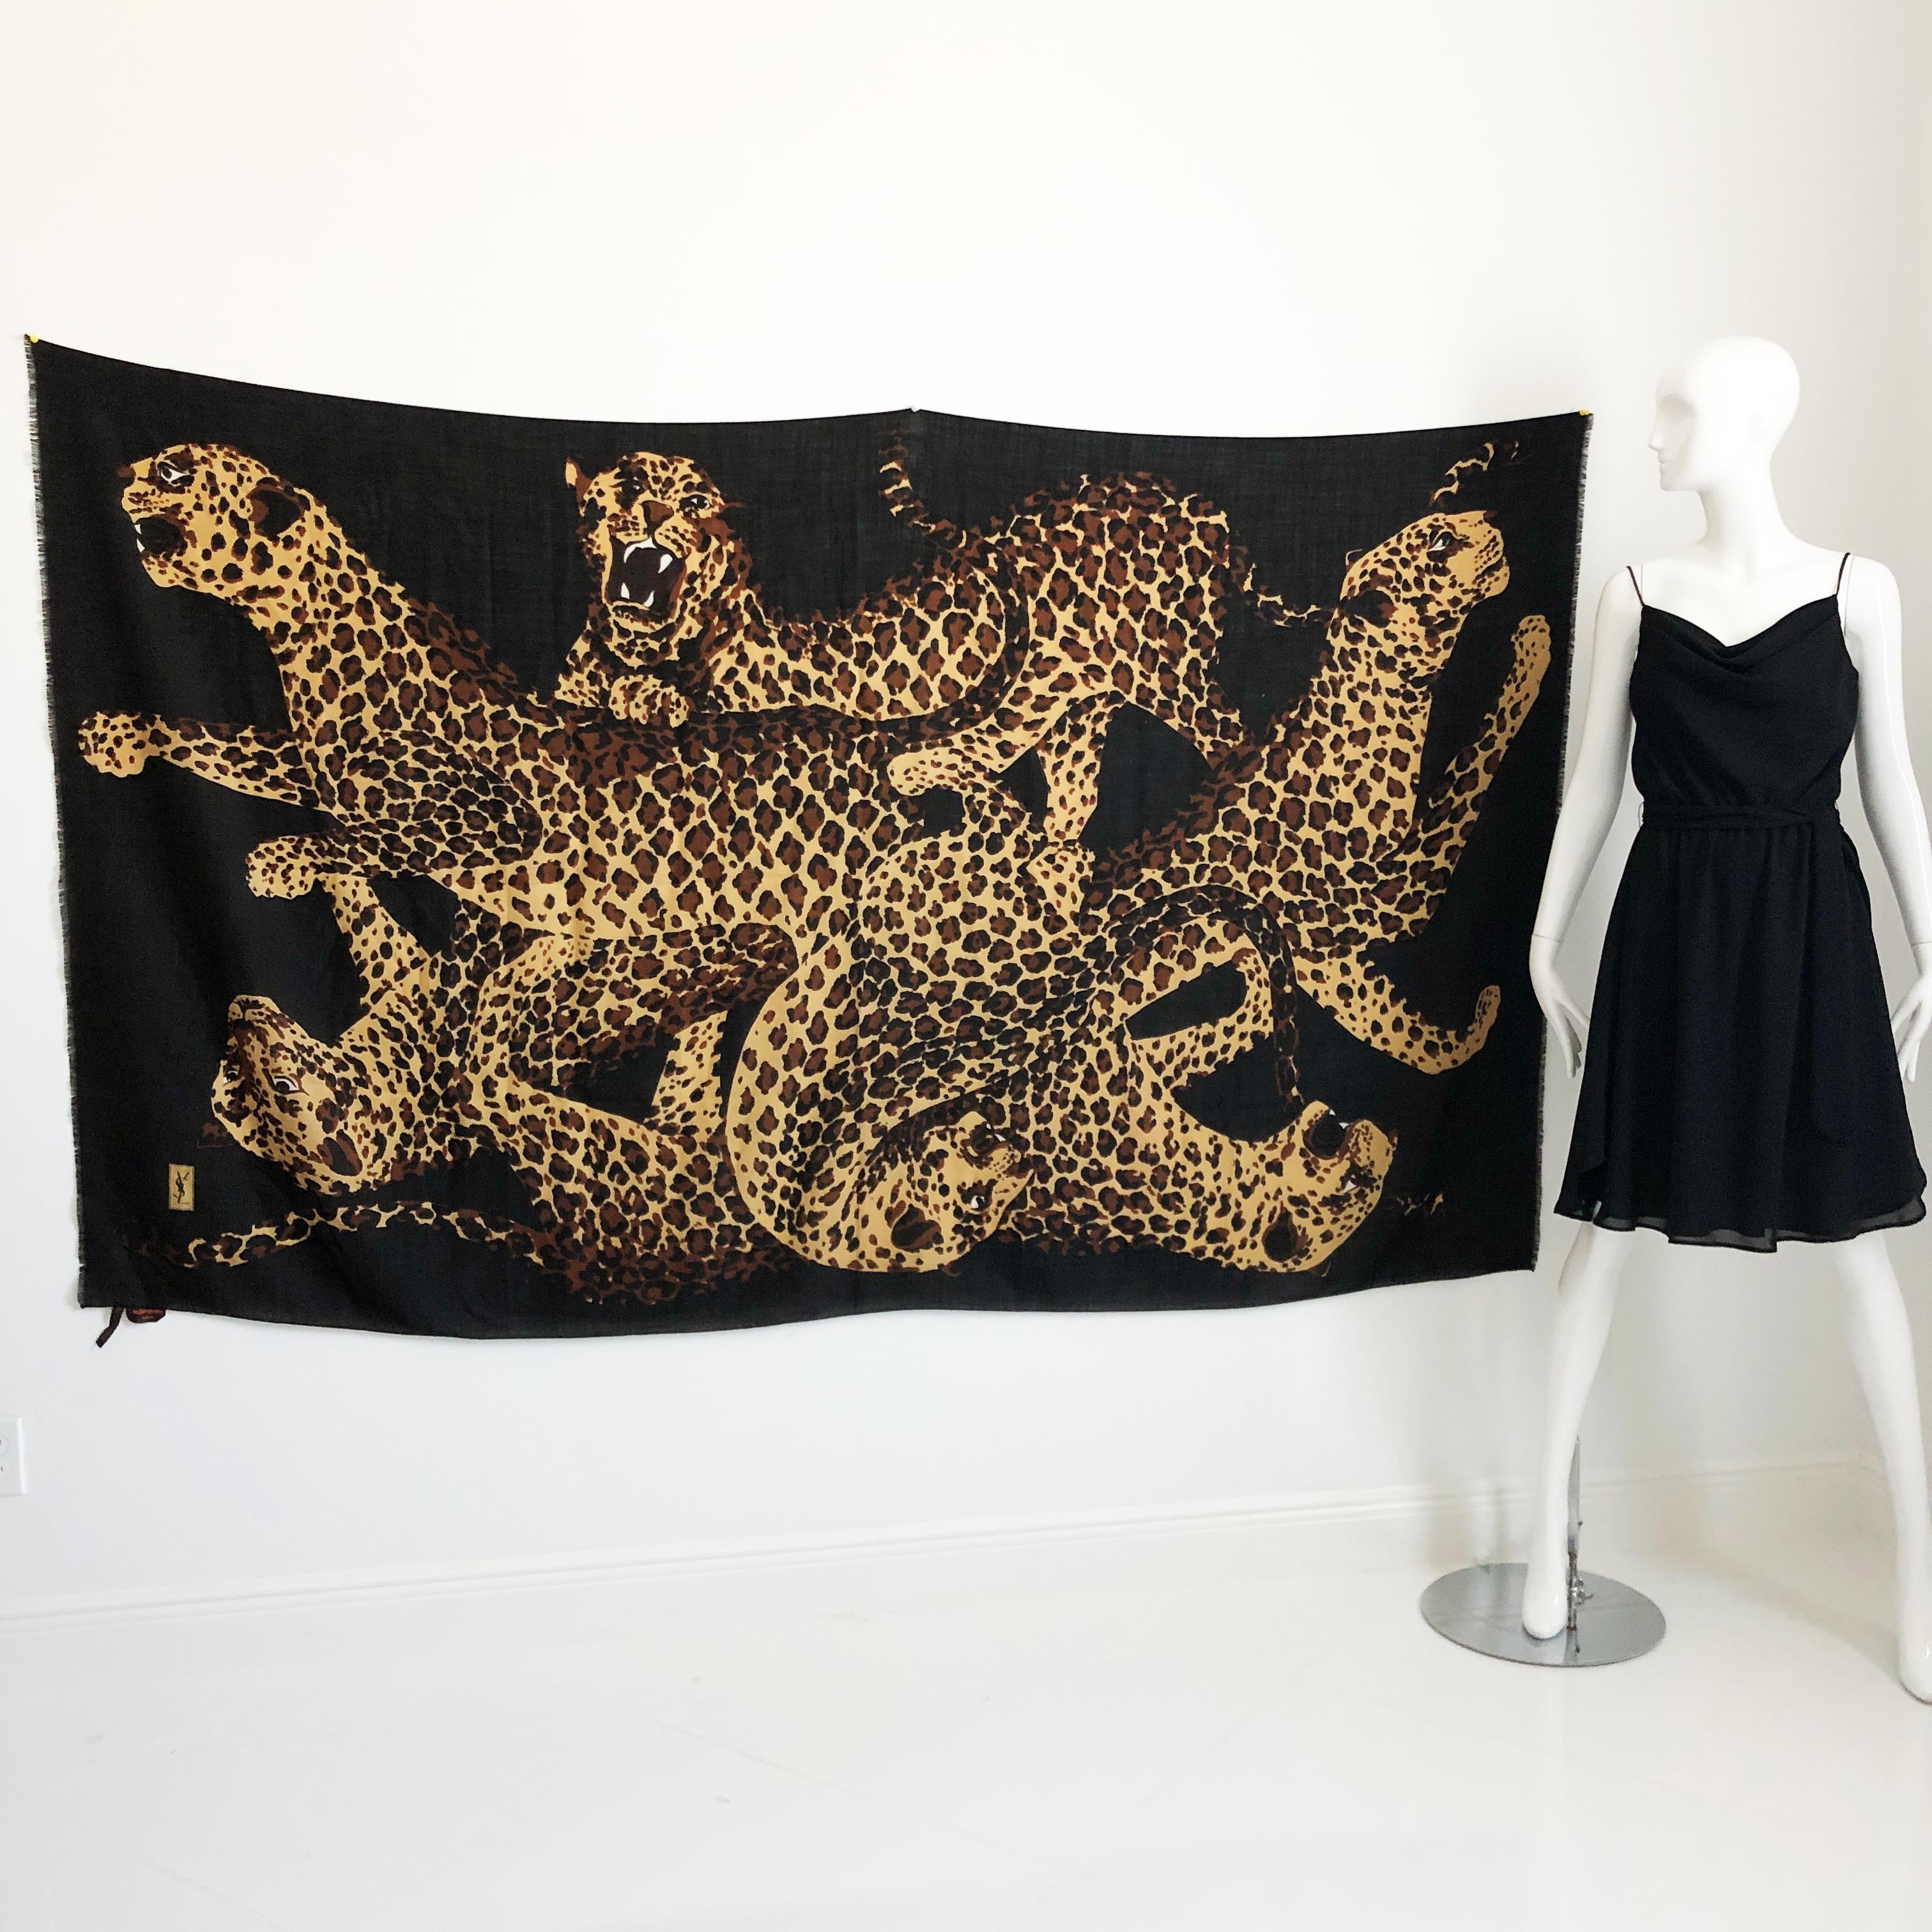 Authentique, d'occasion et incroyablement rare Yves Saint Laurent Massive 84in L x 78in H Leopards shawl or scarf.  Parfait pour être porté comme paréo ou châle (ou même comme décoration murale).  Bords frangés sur deux côtés, avec le logo YSL dans